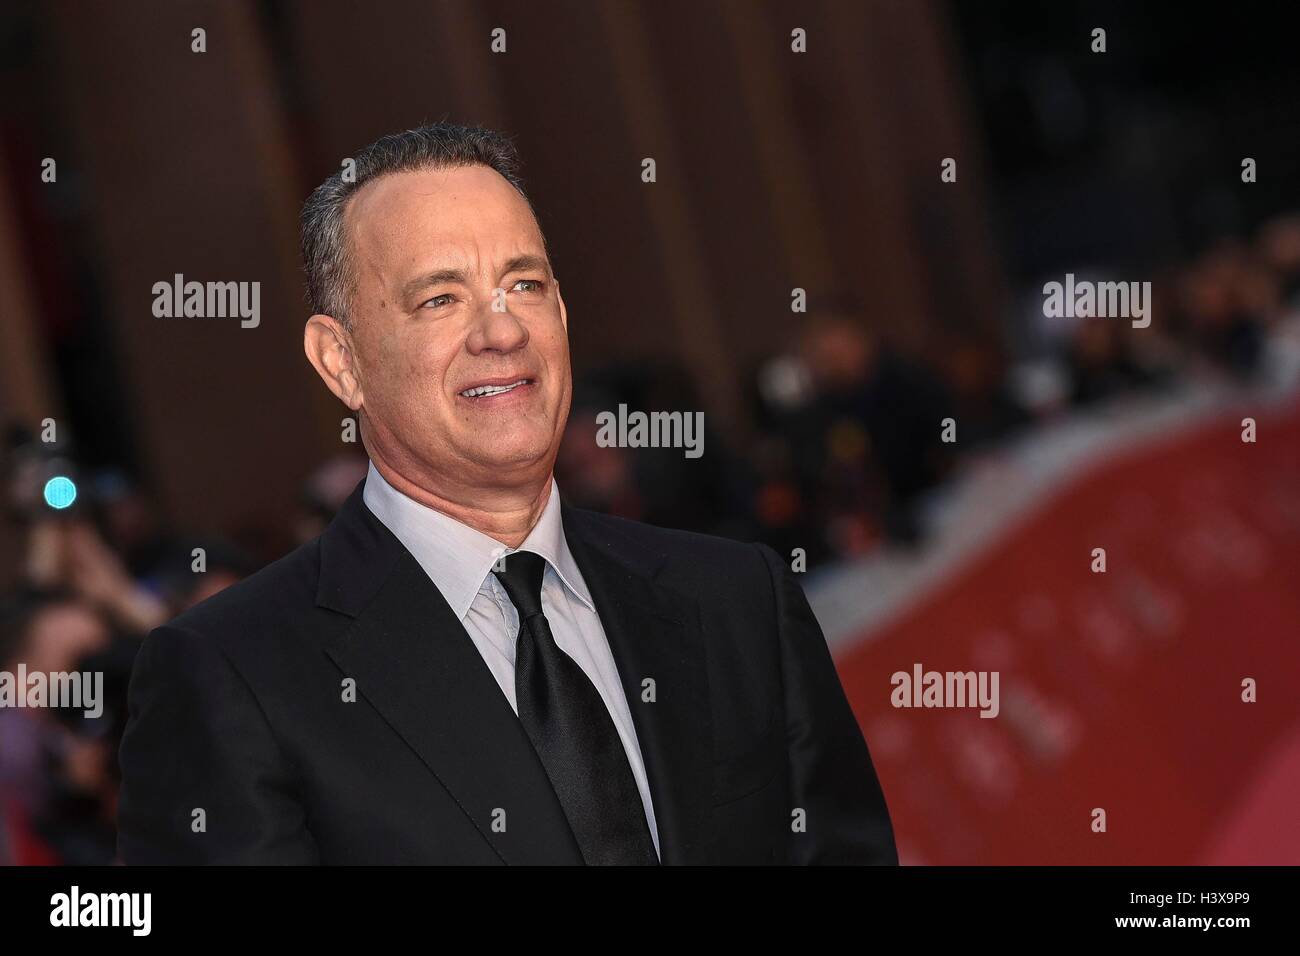 L'Italie, Rome, 13 Octobre 2016 : Tom Hanks au tapis rouge au Festival du Film de Rome 2016 Crédit photo : Fabio Mazzarella/Sintesi/Alamy Live News Banque D'Images